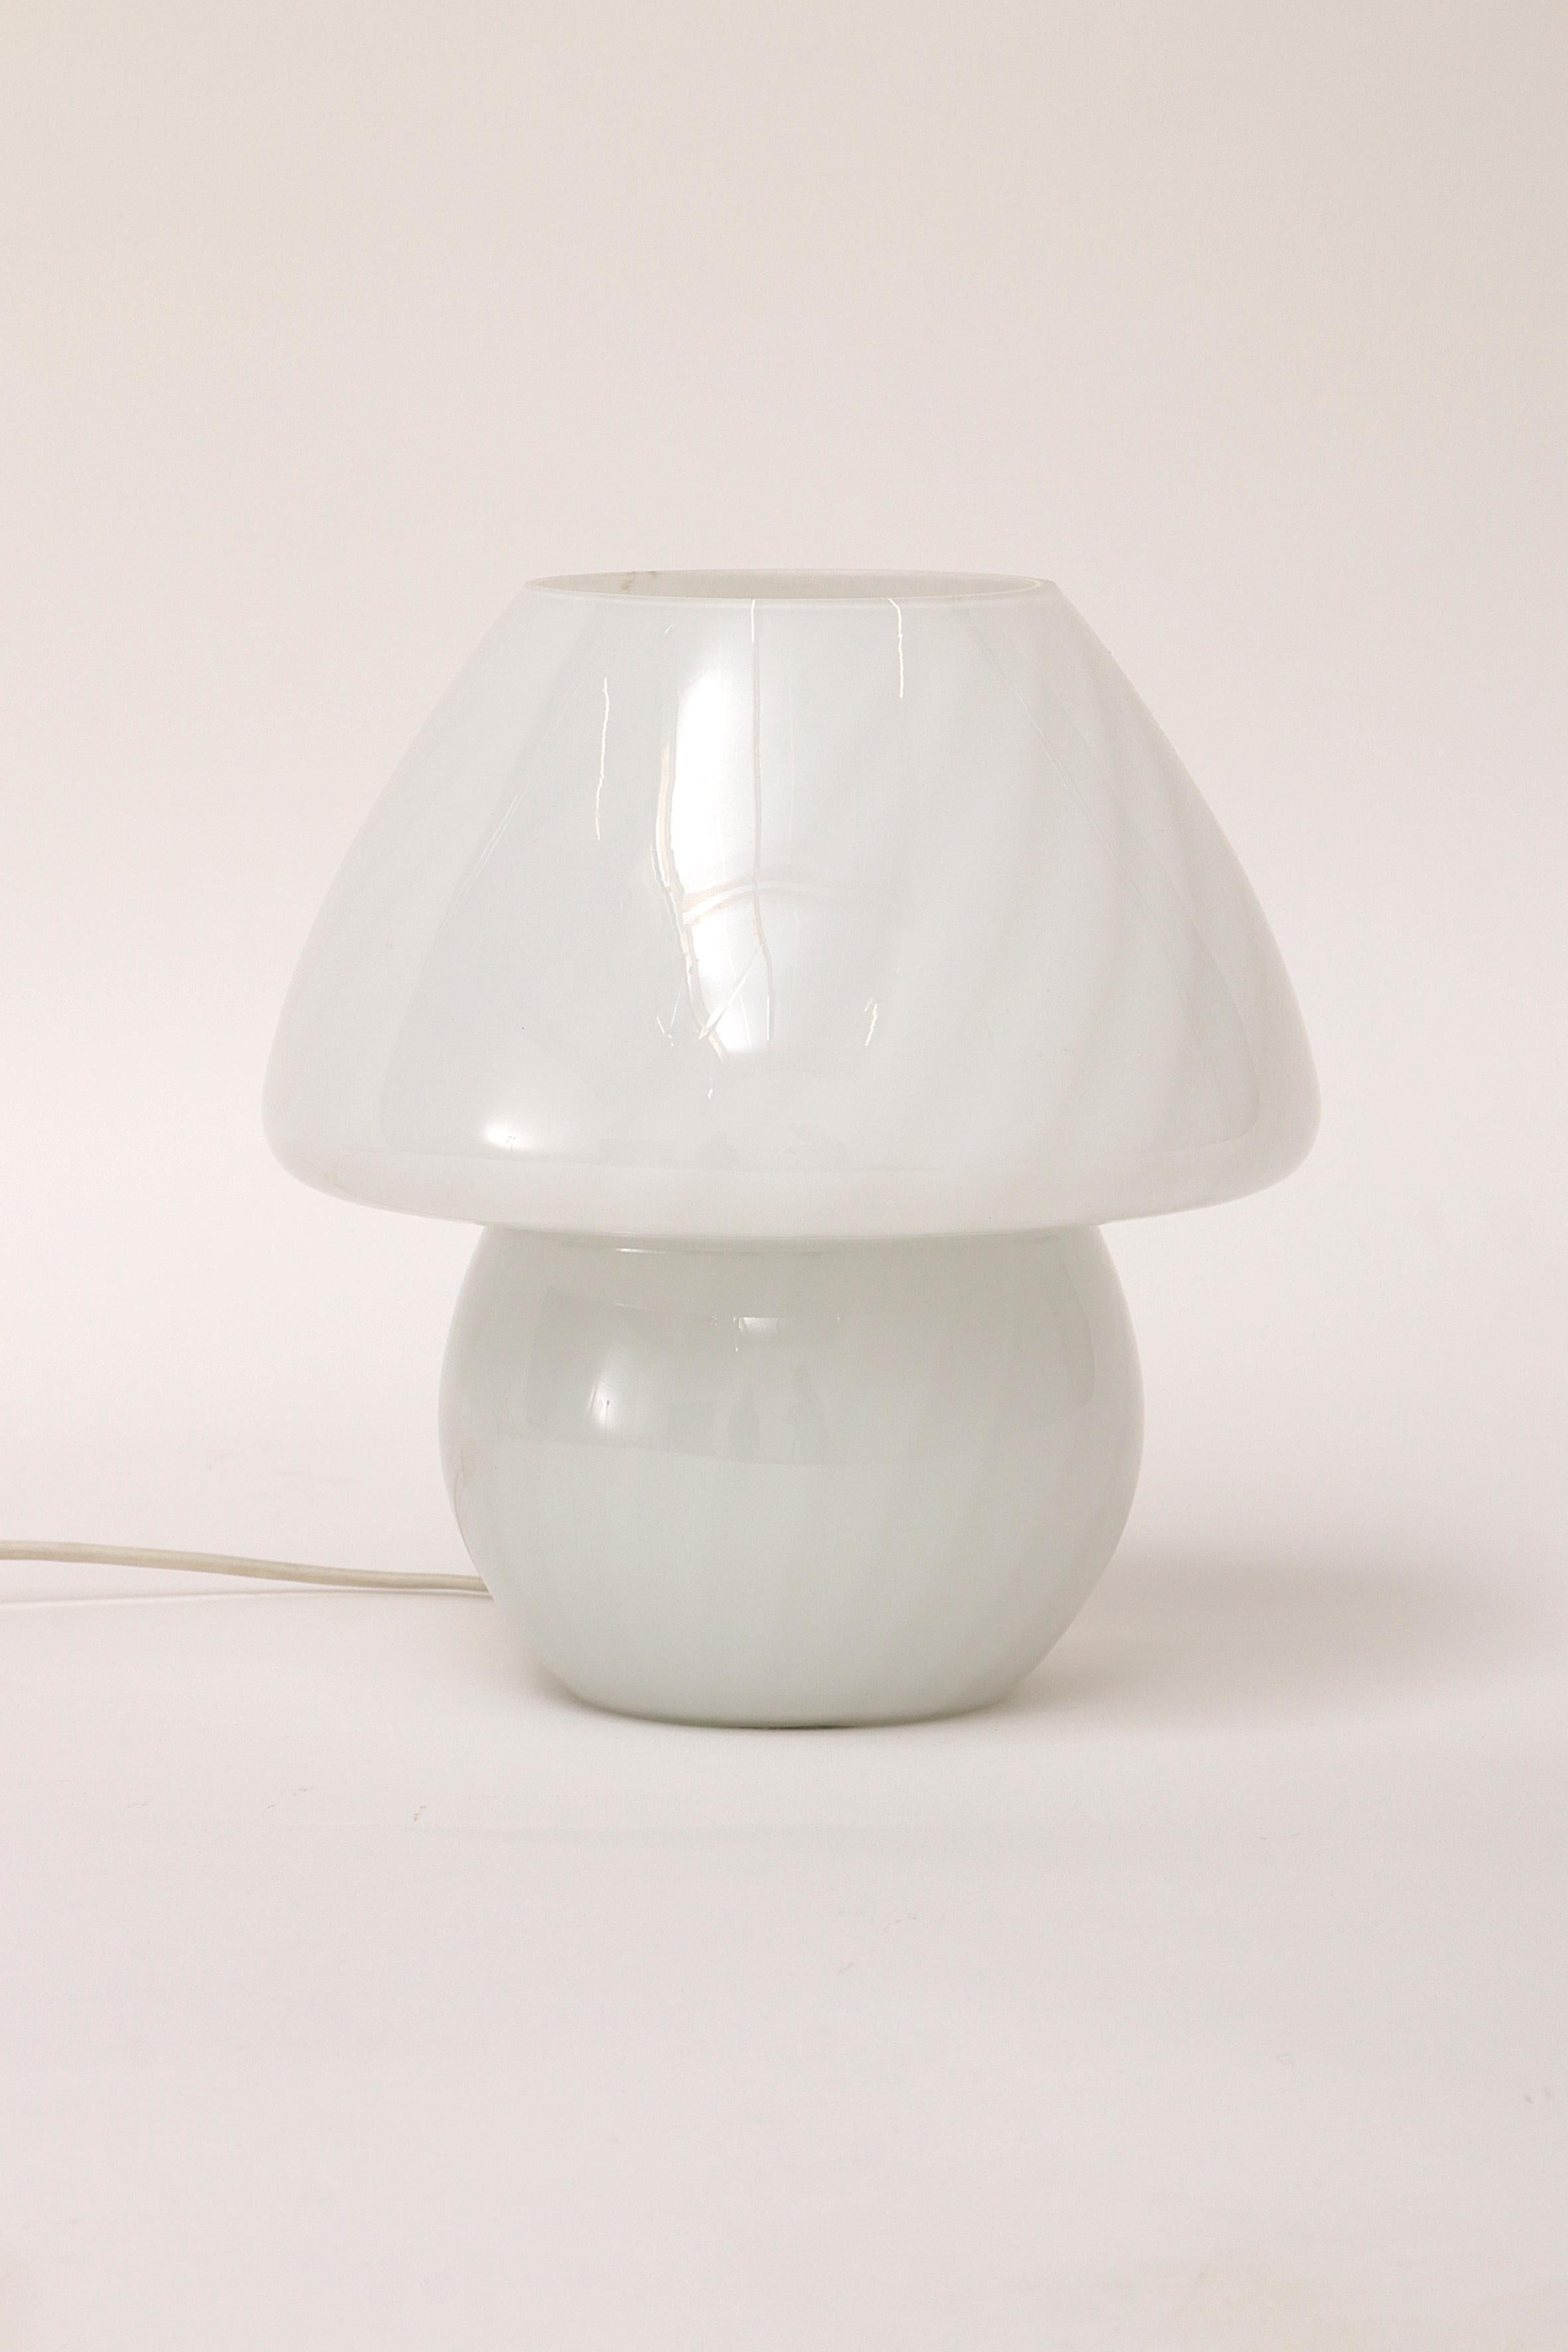 Schöner Pilz Lampe mit einem schönen Licht von Glashütte Deutschland in den 1960er Jahren gemacht.

Es ist hell, ohne zu blenden. Mit einem schönen weichen Licht und einem Schalter.

Und wirft durch die Öffnung Licht an die Decke, das auch den Raum